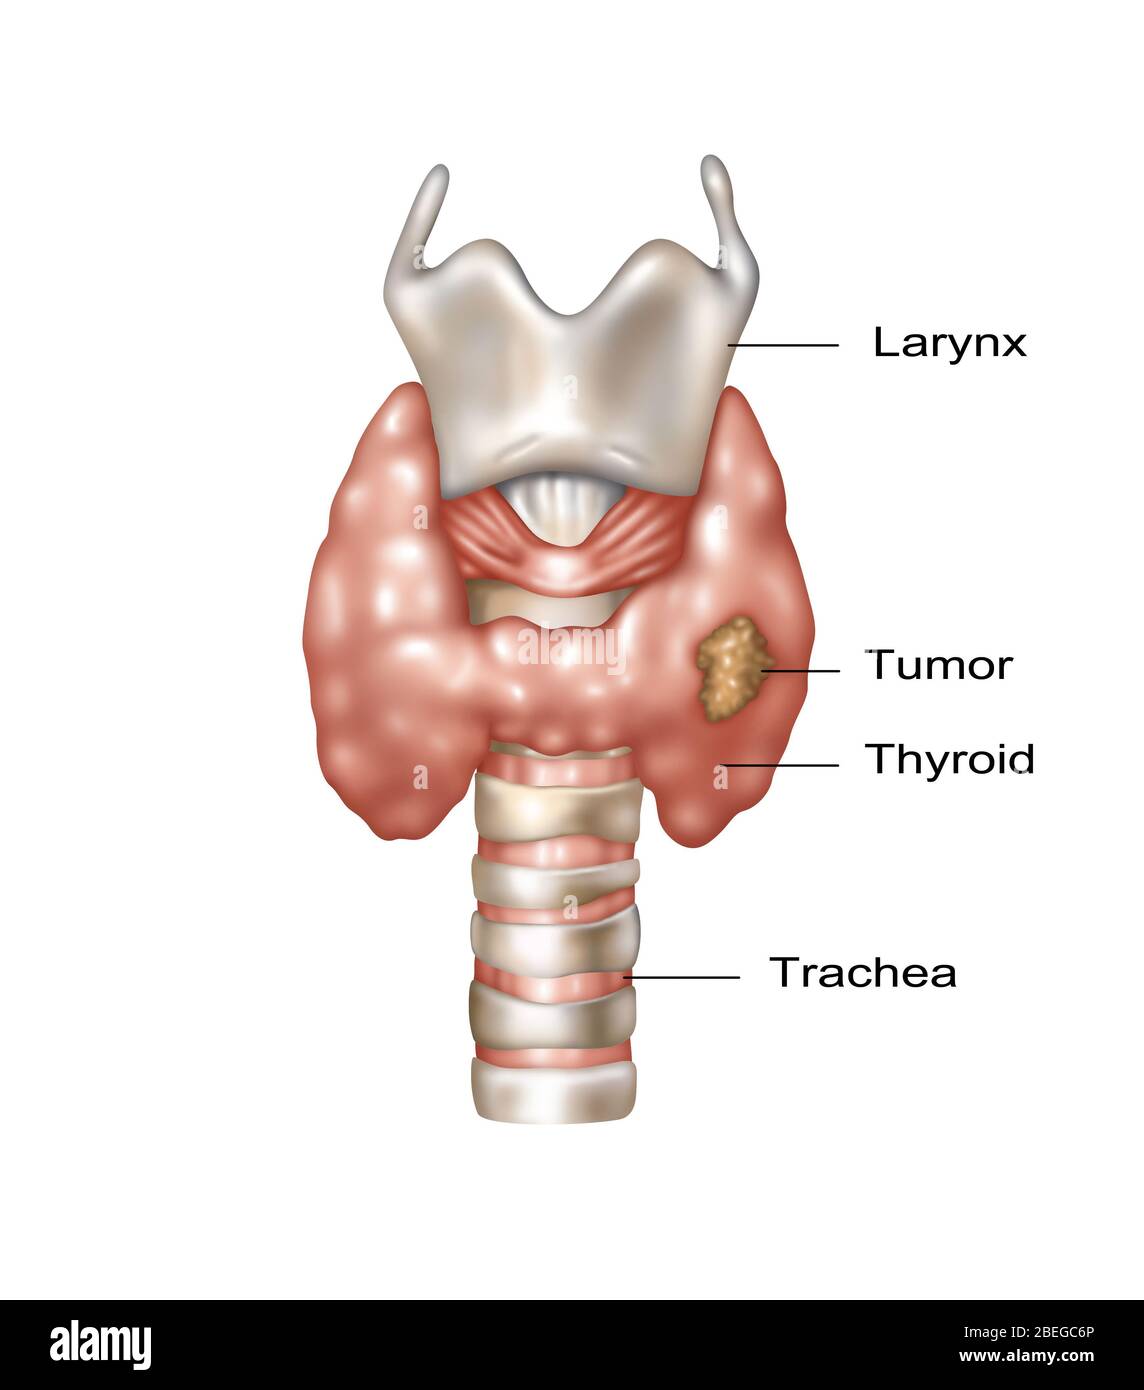 Illustration montrant l'emplacement du larynx, de la glande thyroïde et de la trachée. Une croissance maligne peut être observée dans la partie inférieure droite de la thyroïde. Banque D'Images